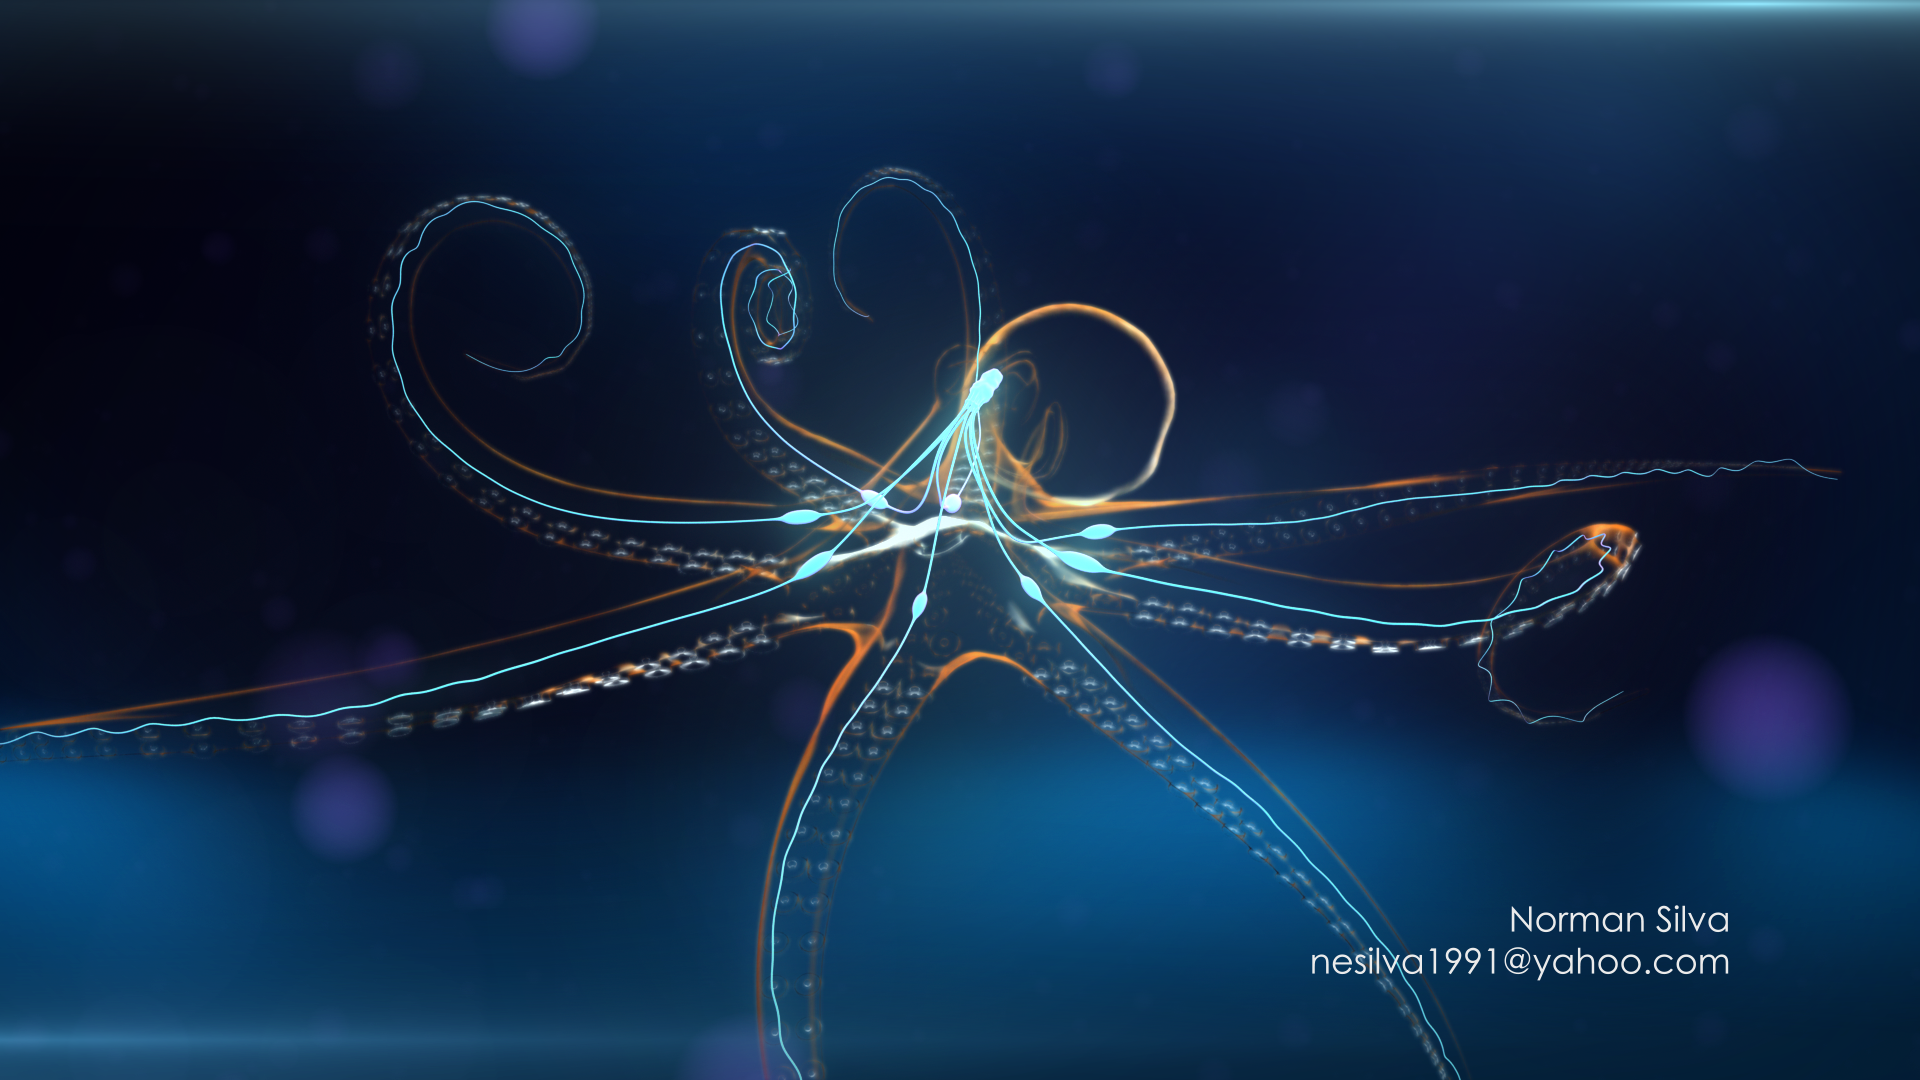 Visualizations-Norman Silva- Octopus.png